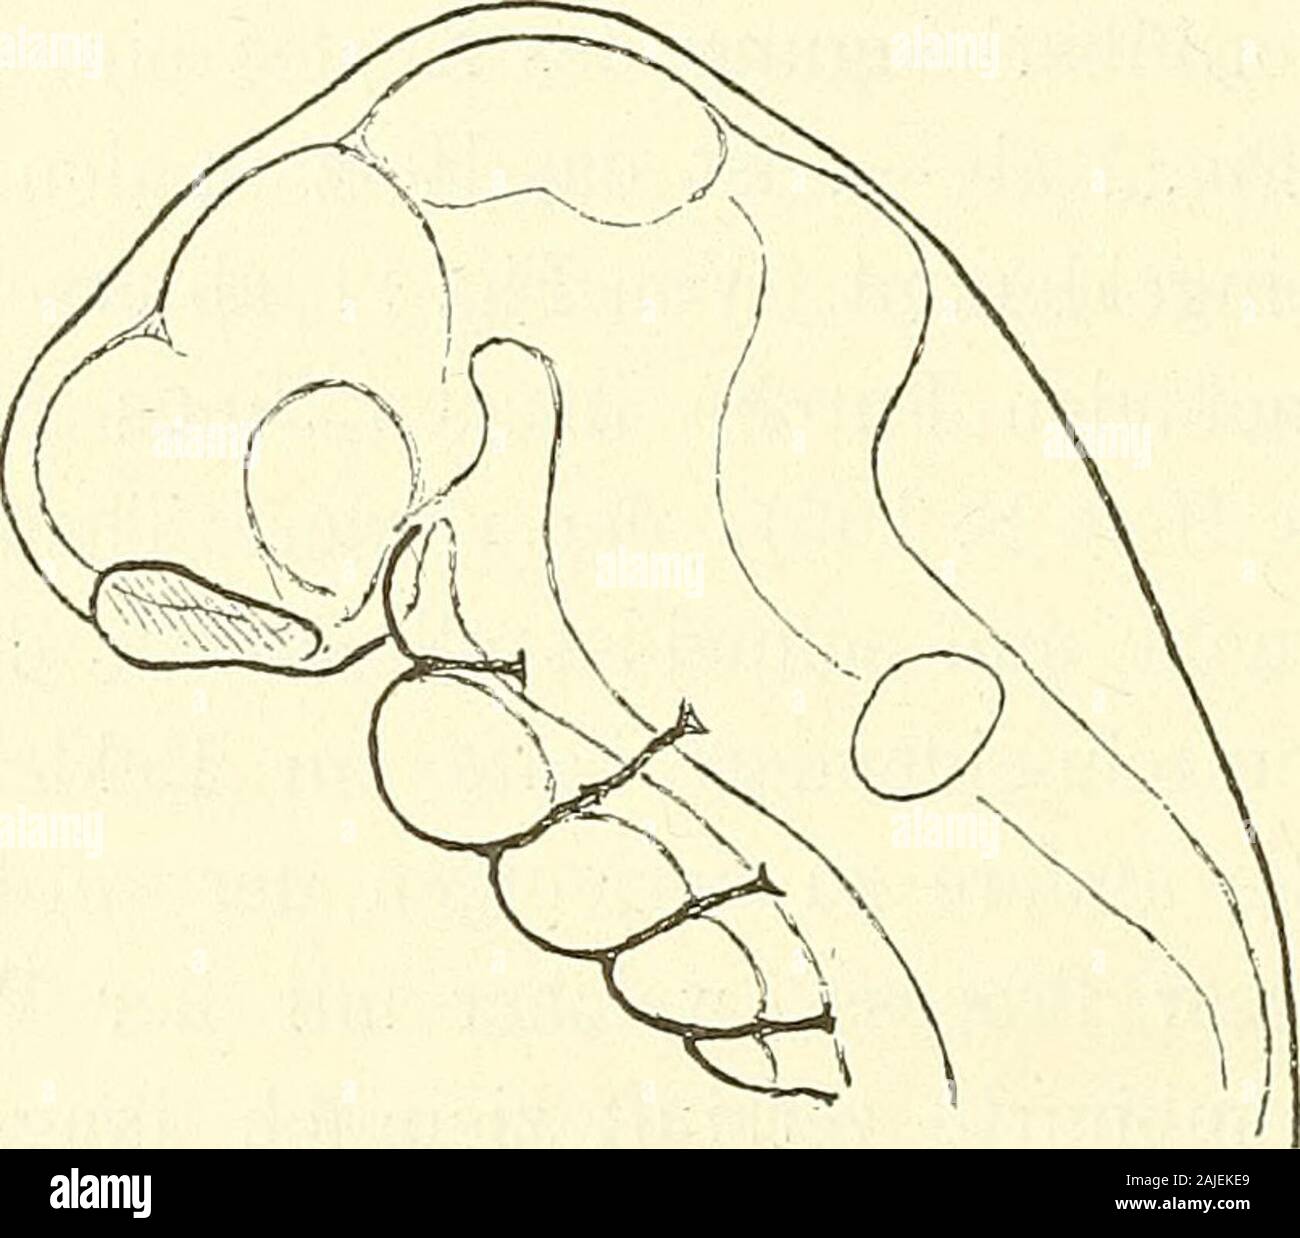 Anatomie menschlicher Embryonen . krümmte Rückenlinie die längste und reicht vom Nacken-höcker bis zur Höhe des Mittelhirns; an sie schliesst sich die vomMittel- zum Hemisphärenhirn sich erstreckende Scheitellinie an.Die vordere Seite des Vierecks besteht aus zwei wohl zu unter- 16* 244 Erklärung der Tafeln. scheidenden Strecken, der eigentlichen Gesichtslinie, die von derStirn zum Unterkiefer geht, und der Präbranchiallinie vom Unter-kiefer zur Spitze des vierten Schlundbogens. Von da aus zum Nacken-liöcker reicht die Befestigungshasis des Kopfes. Den weitaus gröss-ten Theil des Kopfprofils n Stock Photo